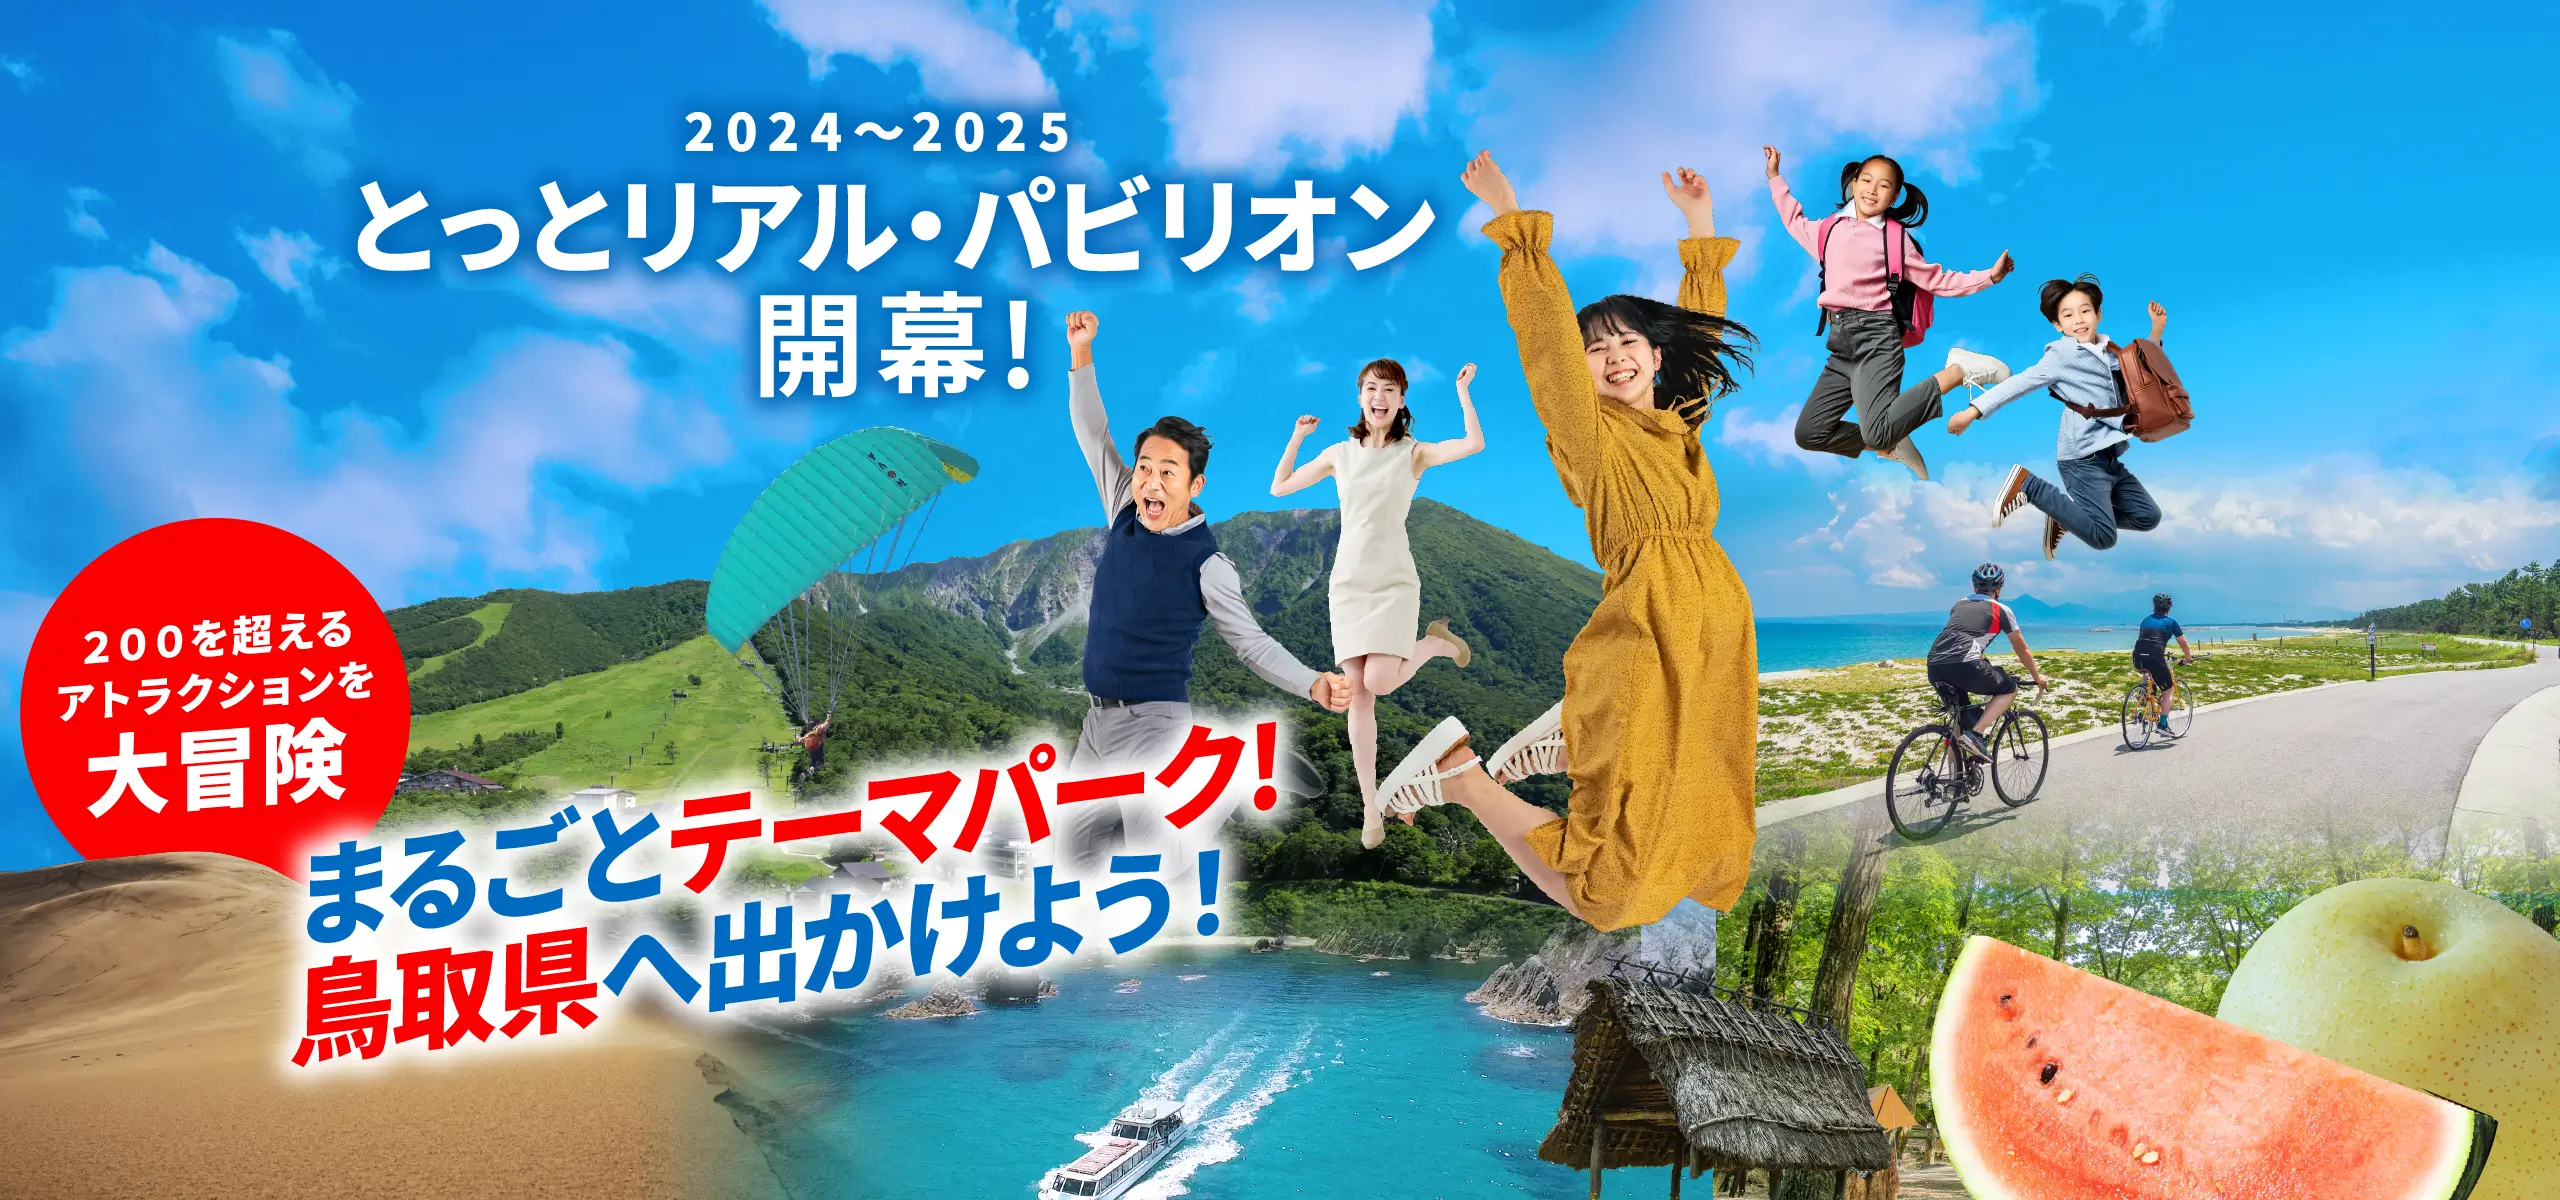 2024〜2025 とっとリアル・パビリオン開幕！鳥取県はまるごとテーマパーク。さあ、鳥取県へ出かけよう！